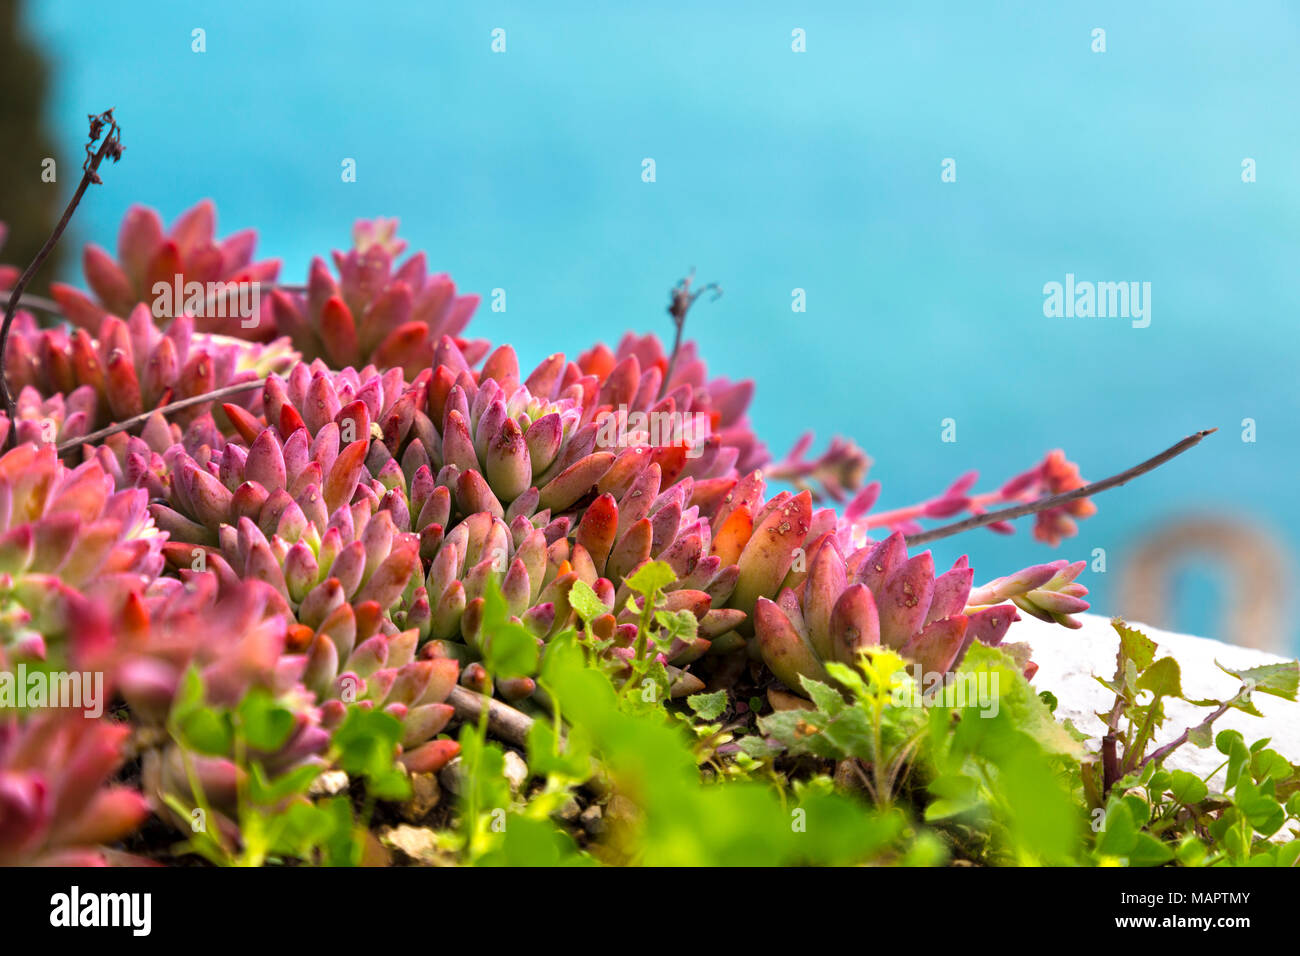 Rosa Sedeveria ruby de plantas suculentas crecen al aire libre con el mar de fondo, Praiano, en la costa de Amalfi, Italia Foto de stock